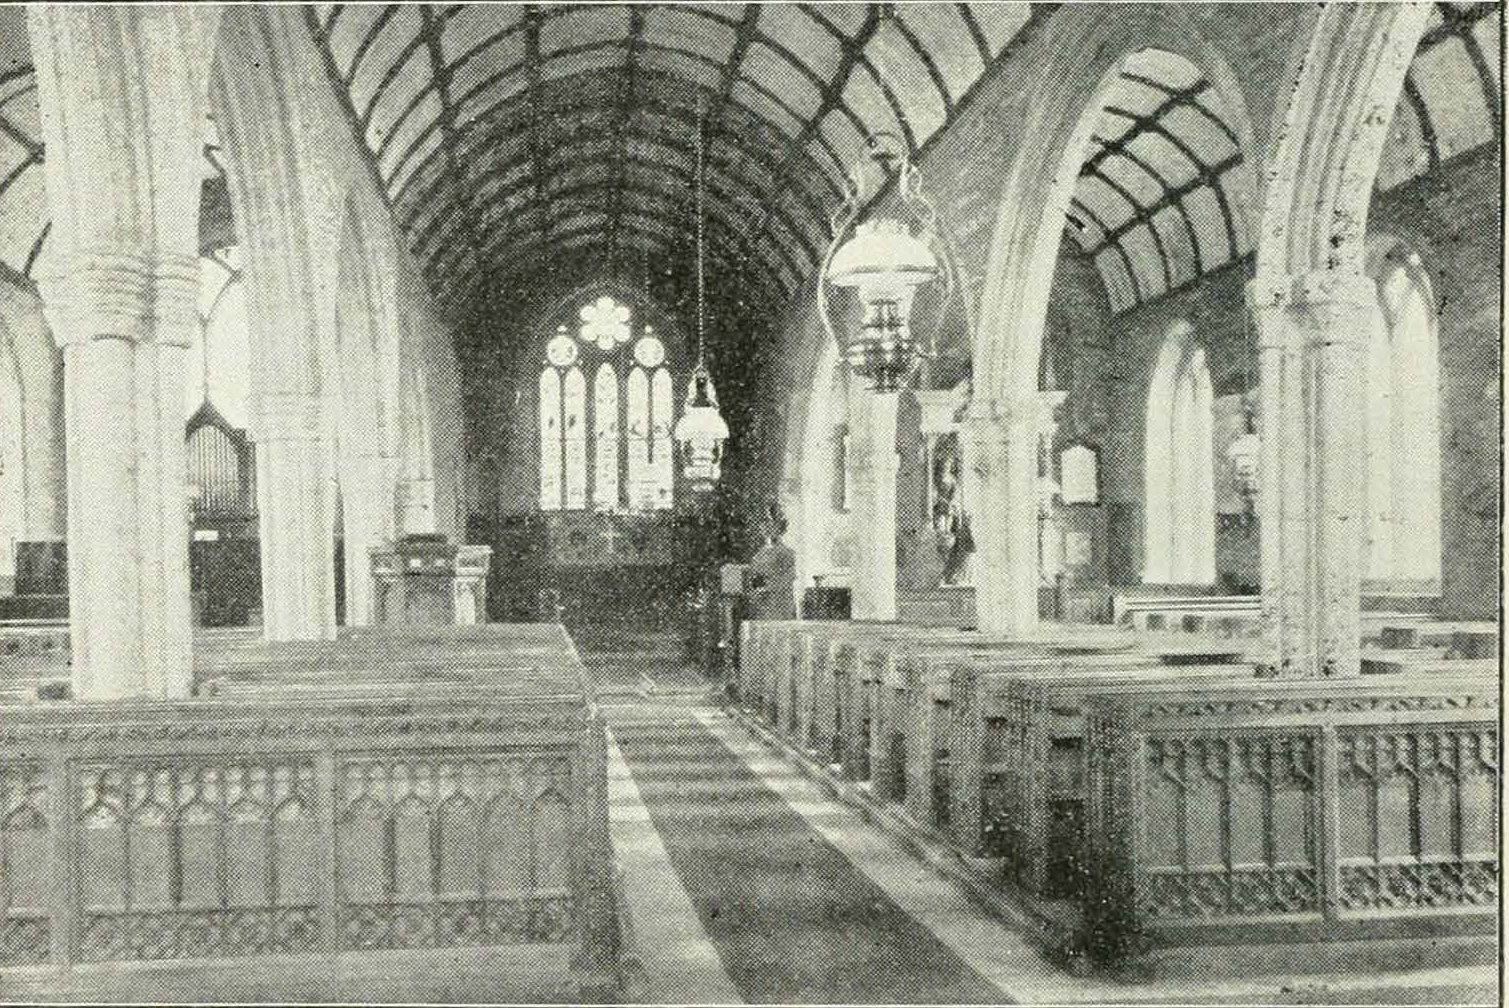 North Hill Church interior in 1900